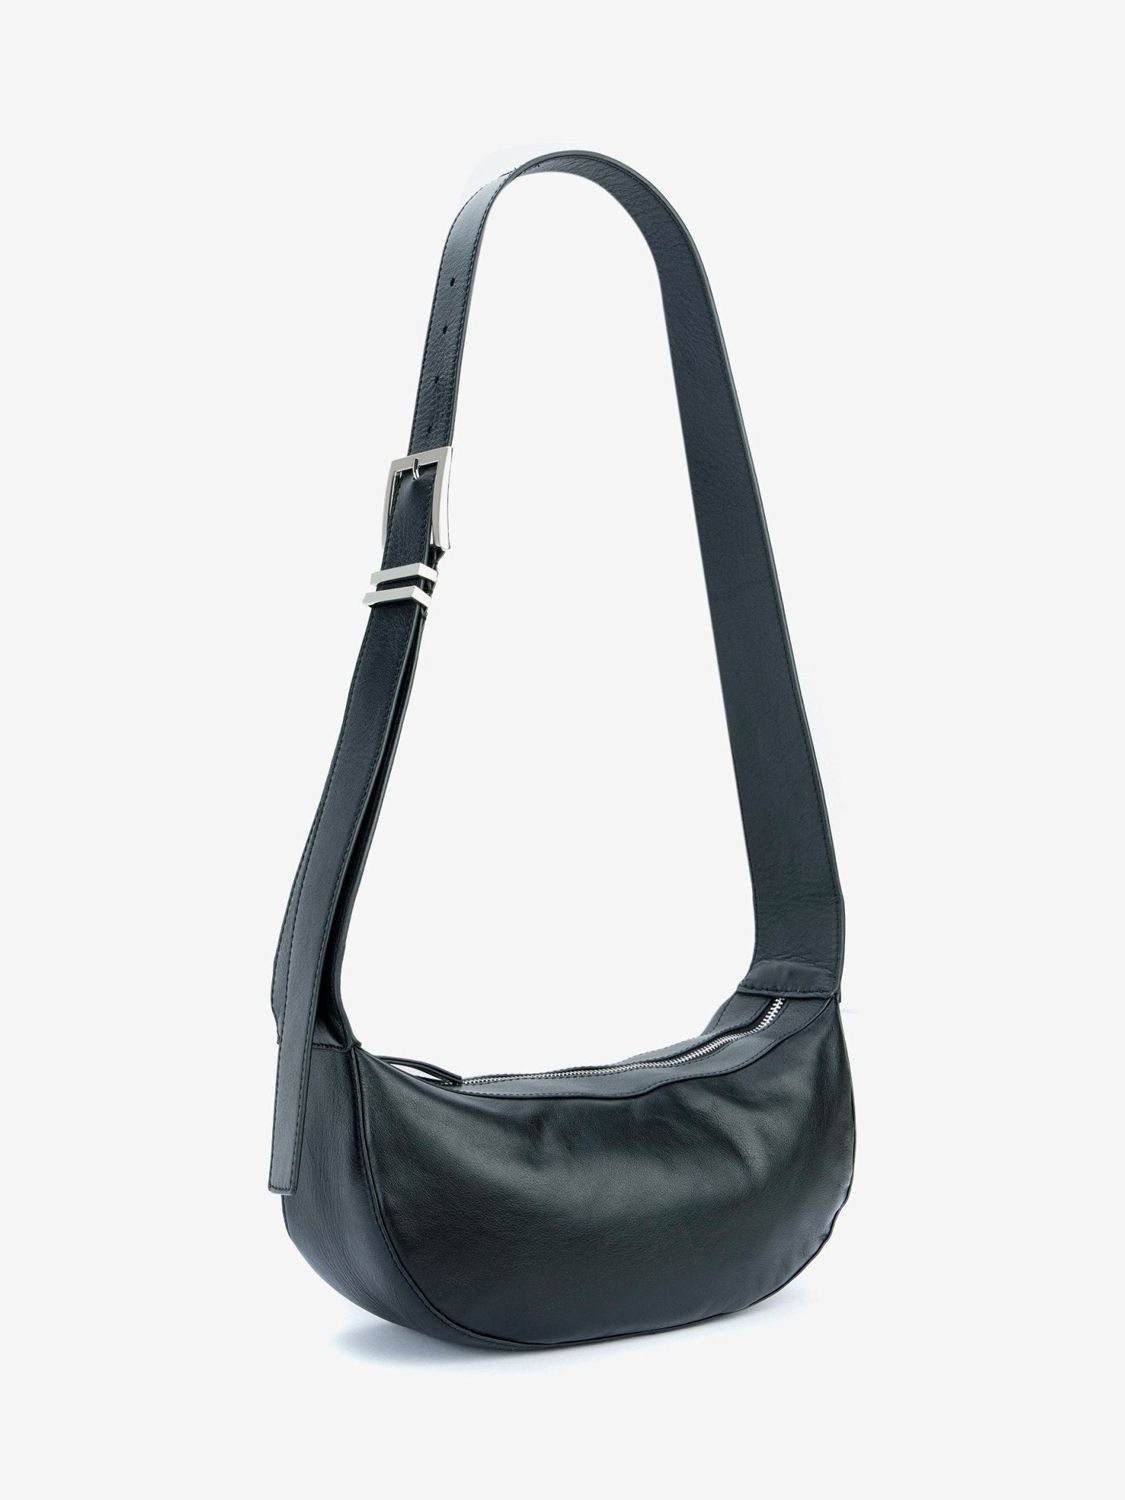 Mint Velvet Leather Sling Bag, Black at John Lewis & Partners